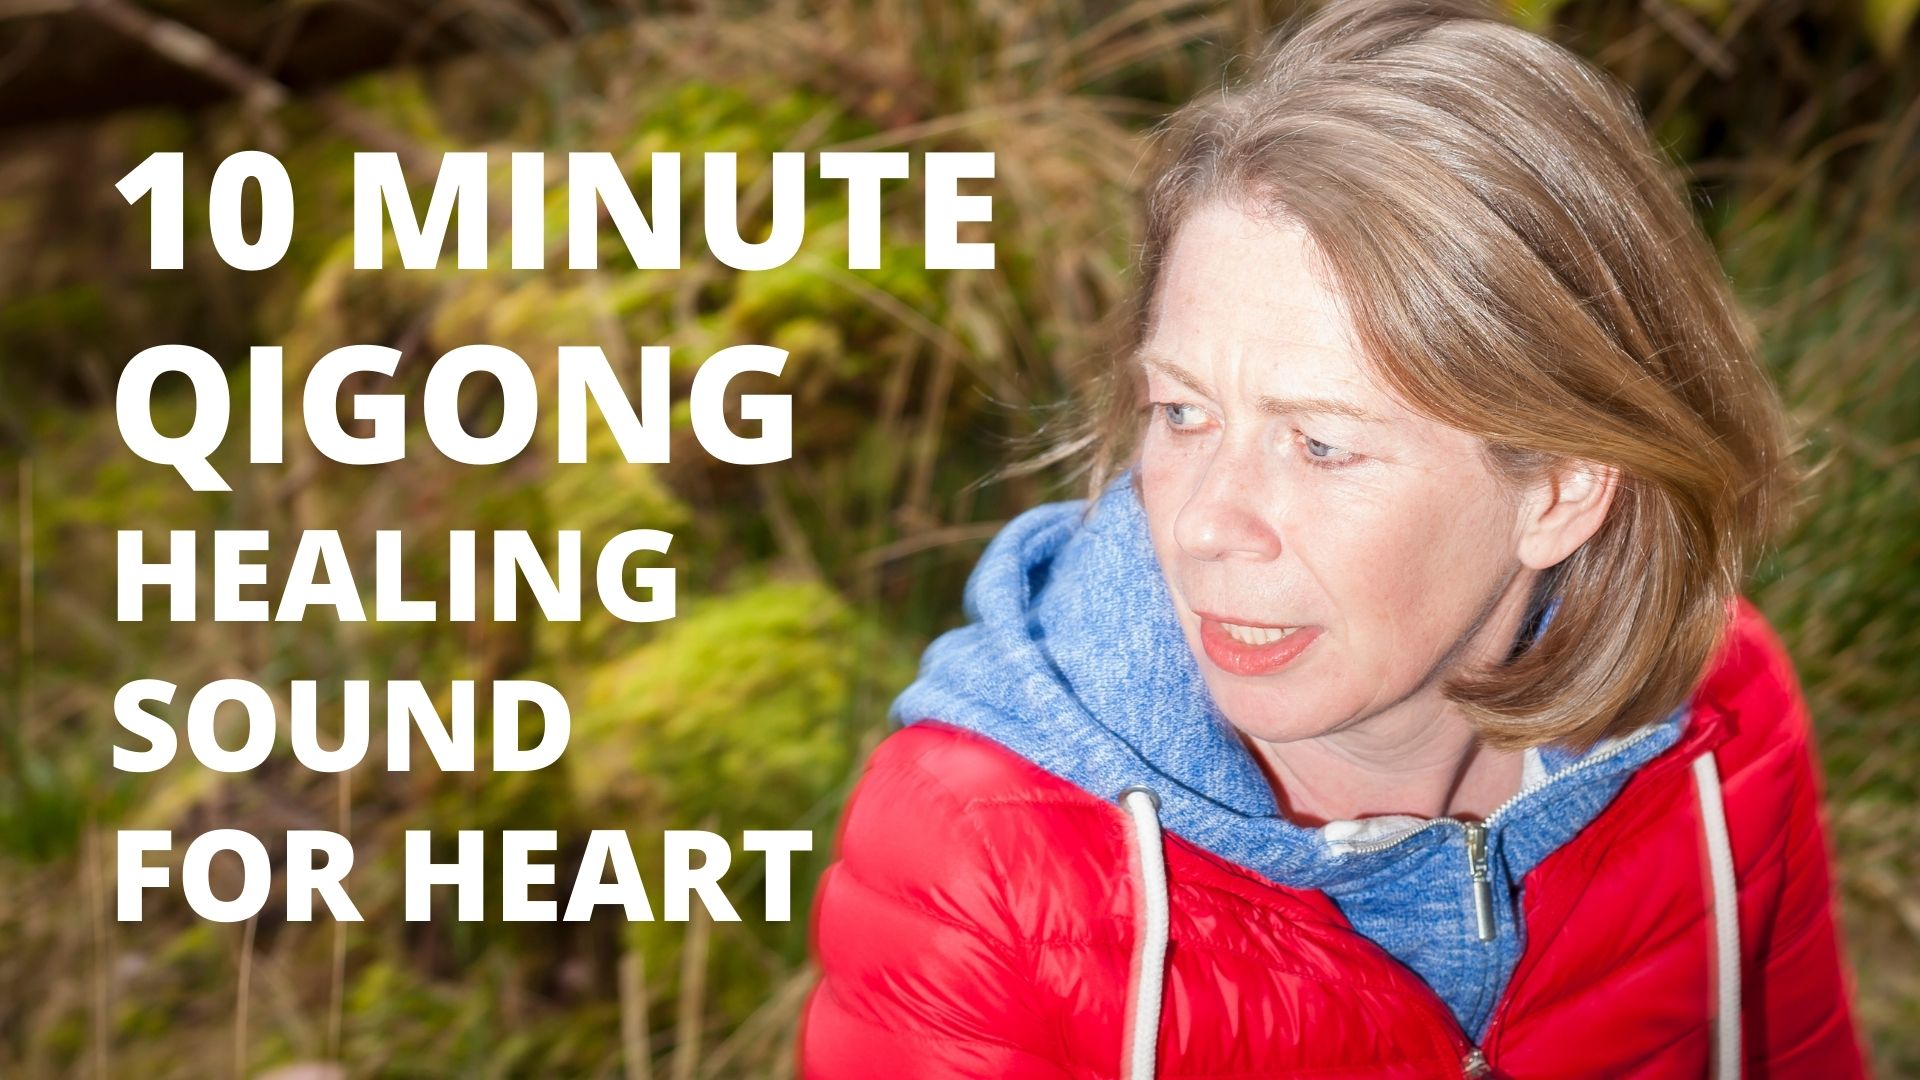 Qigong Healing Sound For Heart